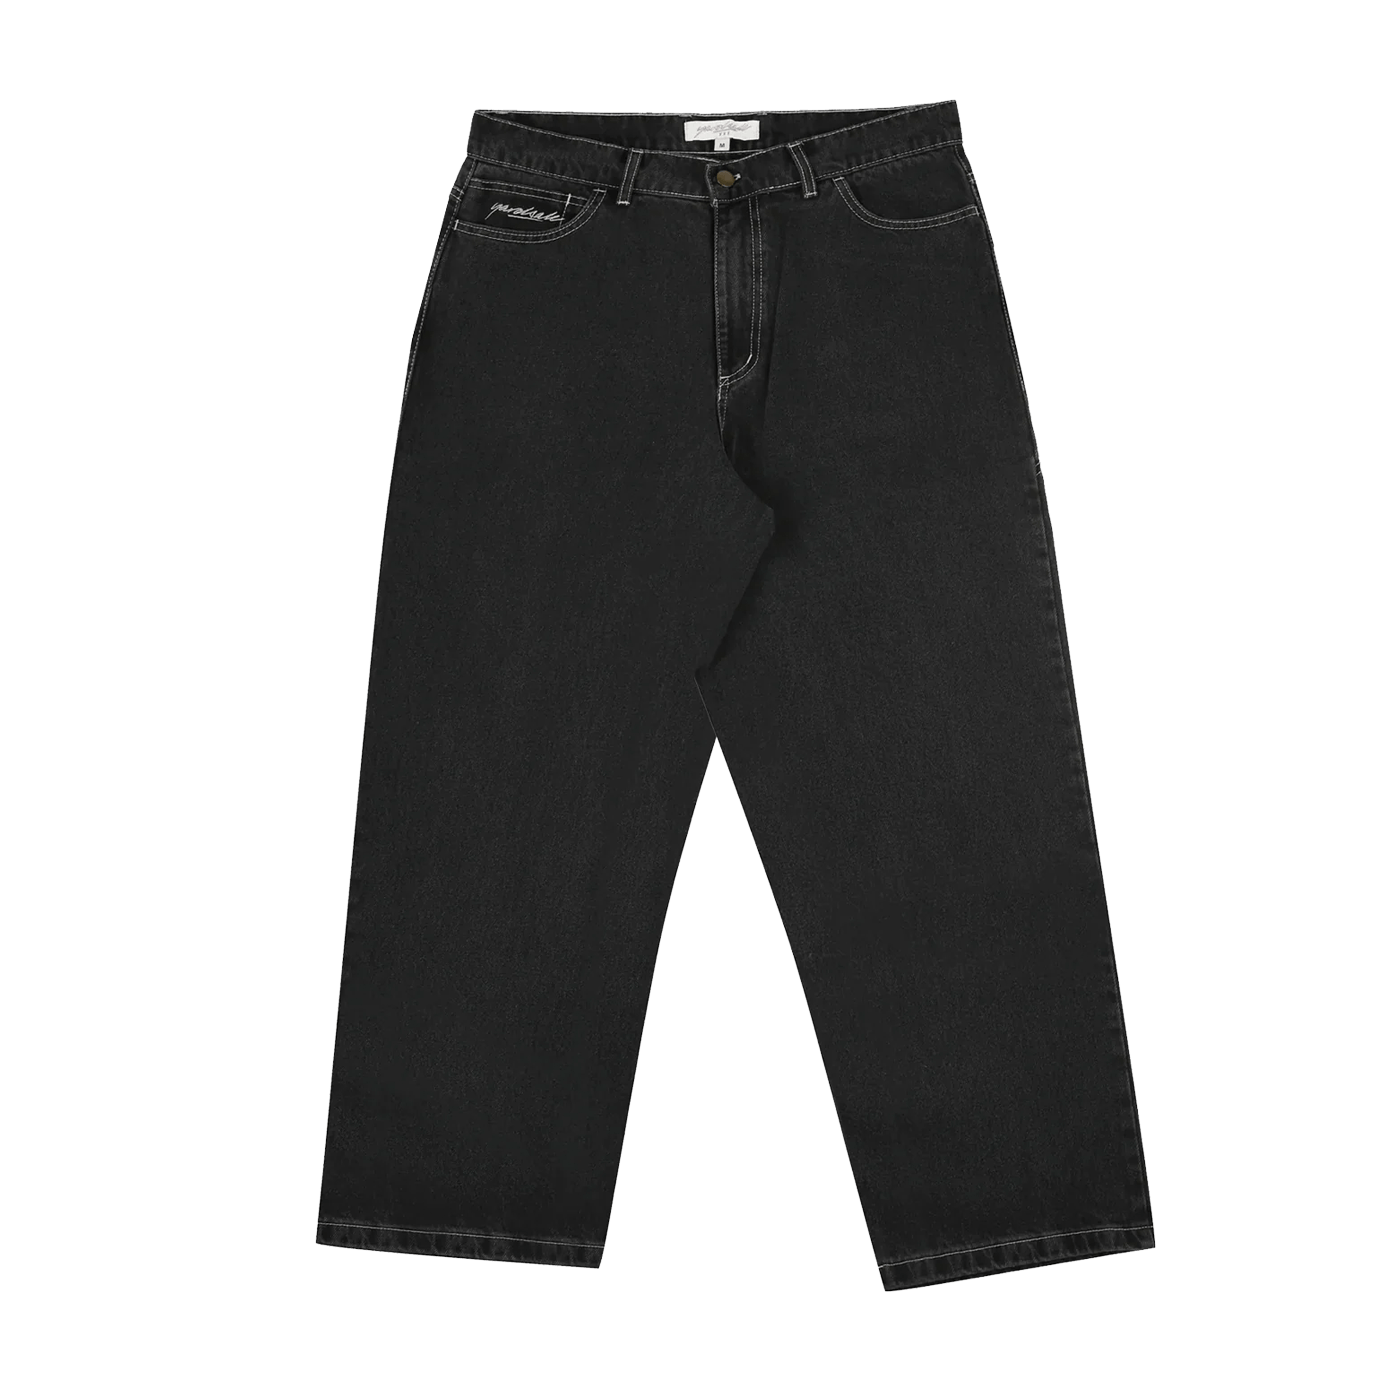 YARDSALE Phantasy Jeans (Black) - デニム/ジーンズ